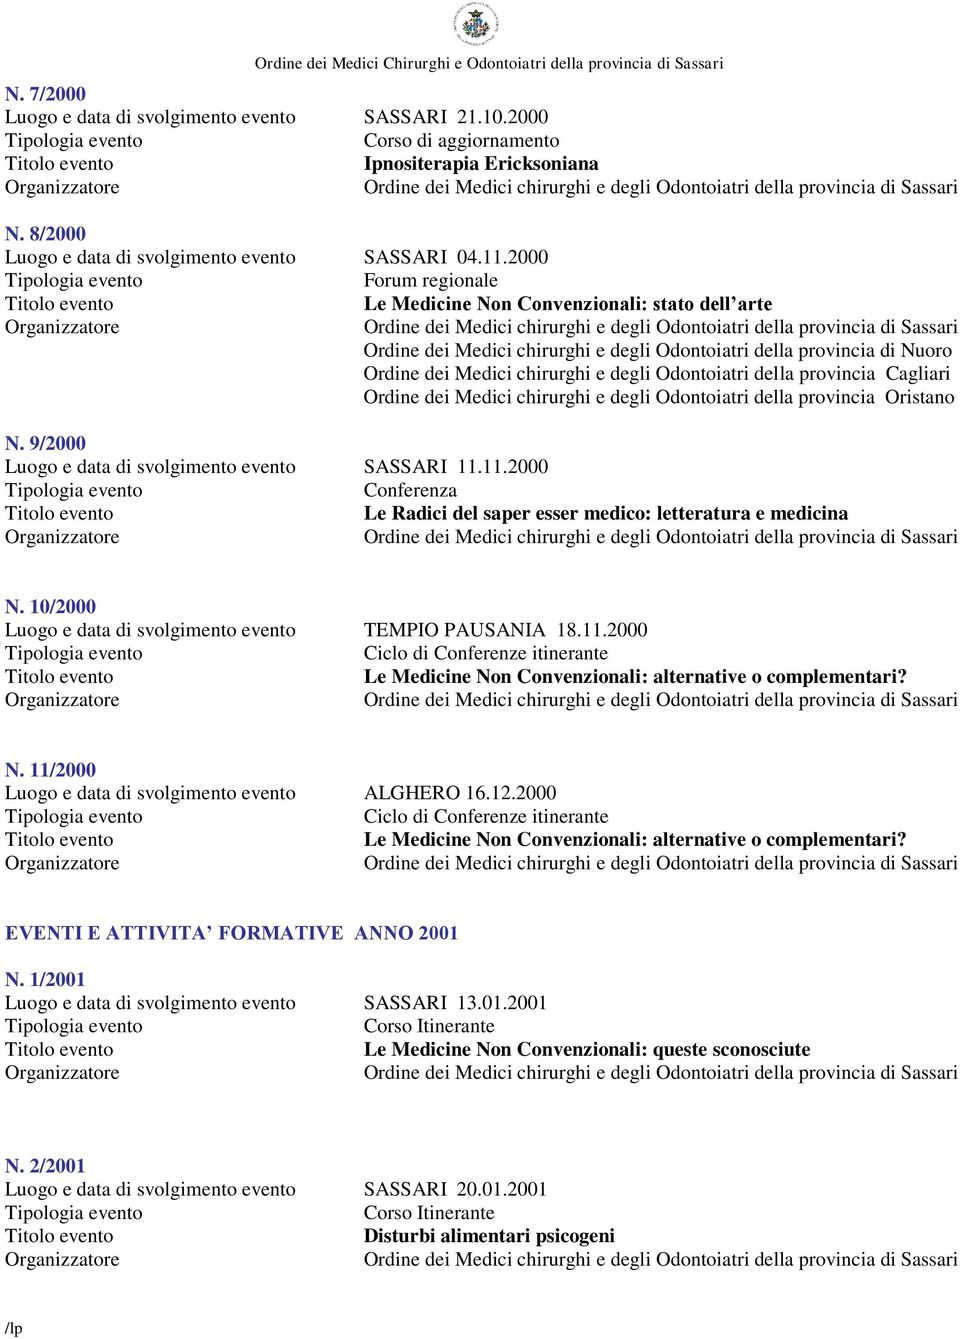 provincia Cagliari Ordine dei Medici chirurghi e degli Odontoiatri della provincia Oristano N. 9/2000 Luogo e data di svolgimento evento SASSARI 11.